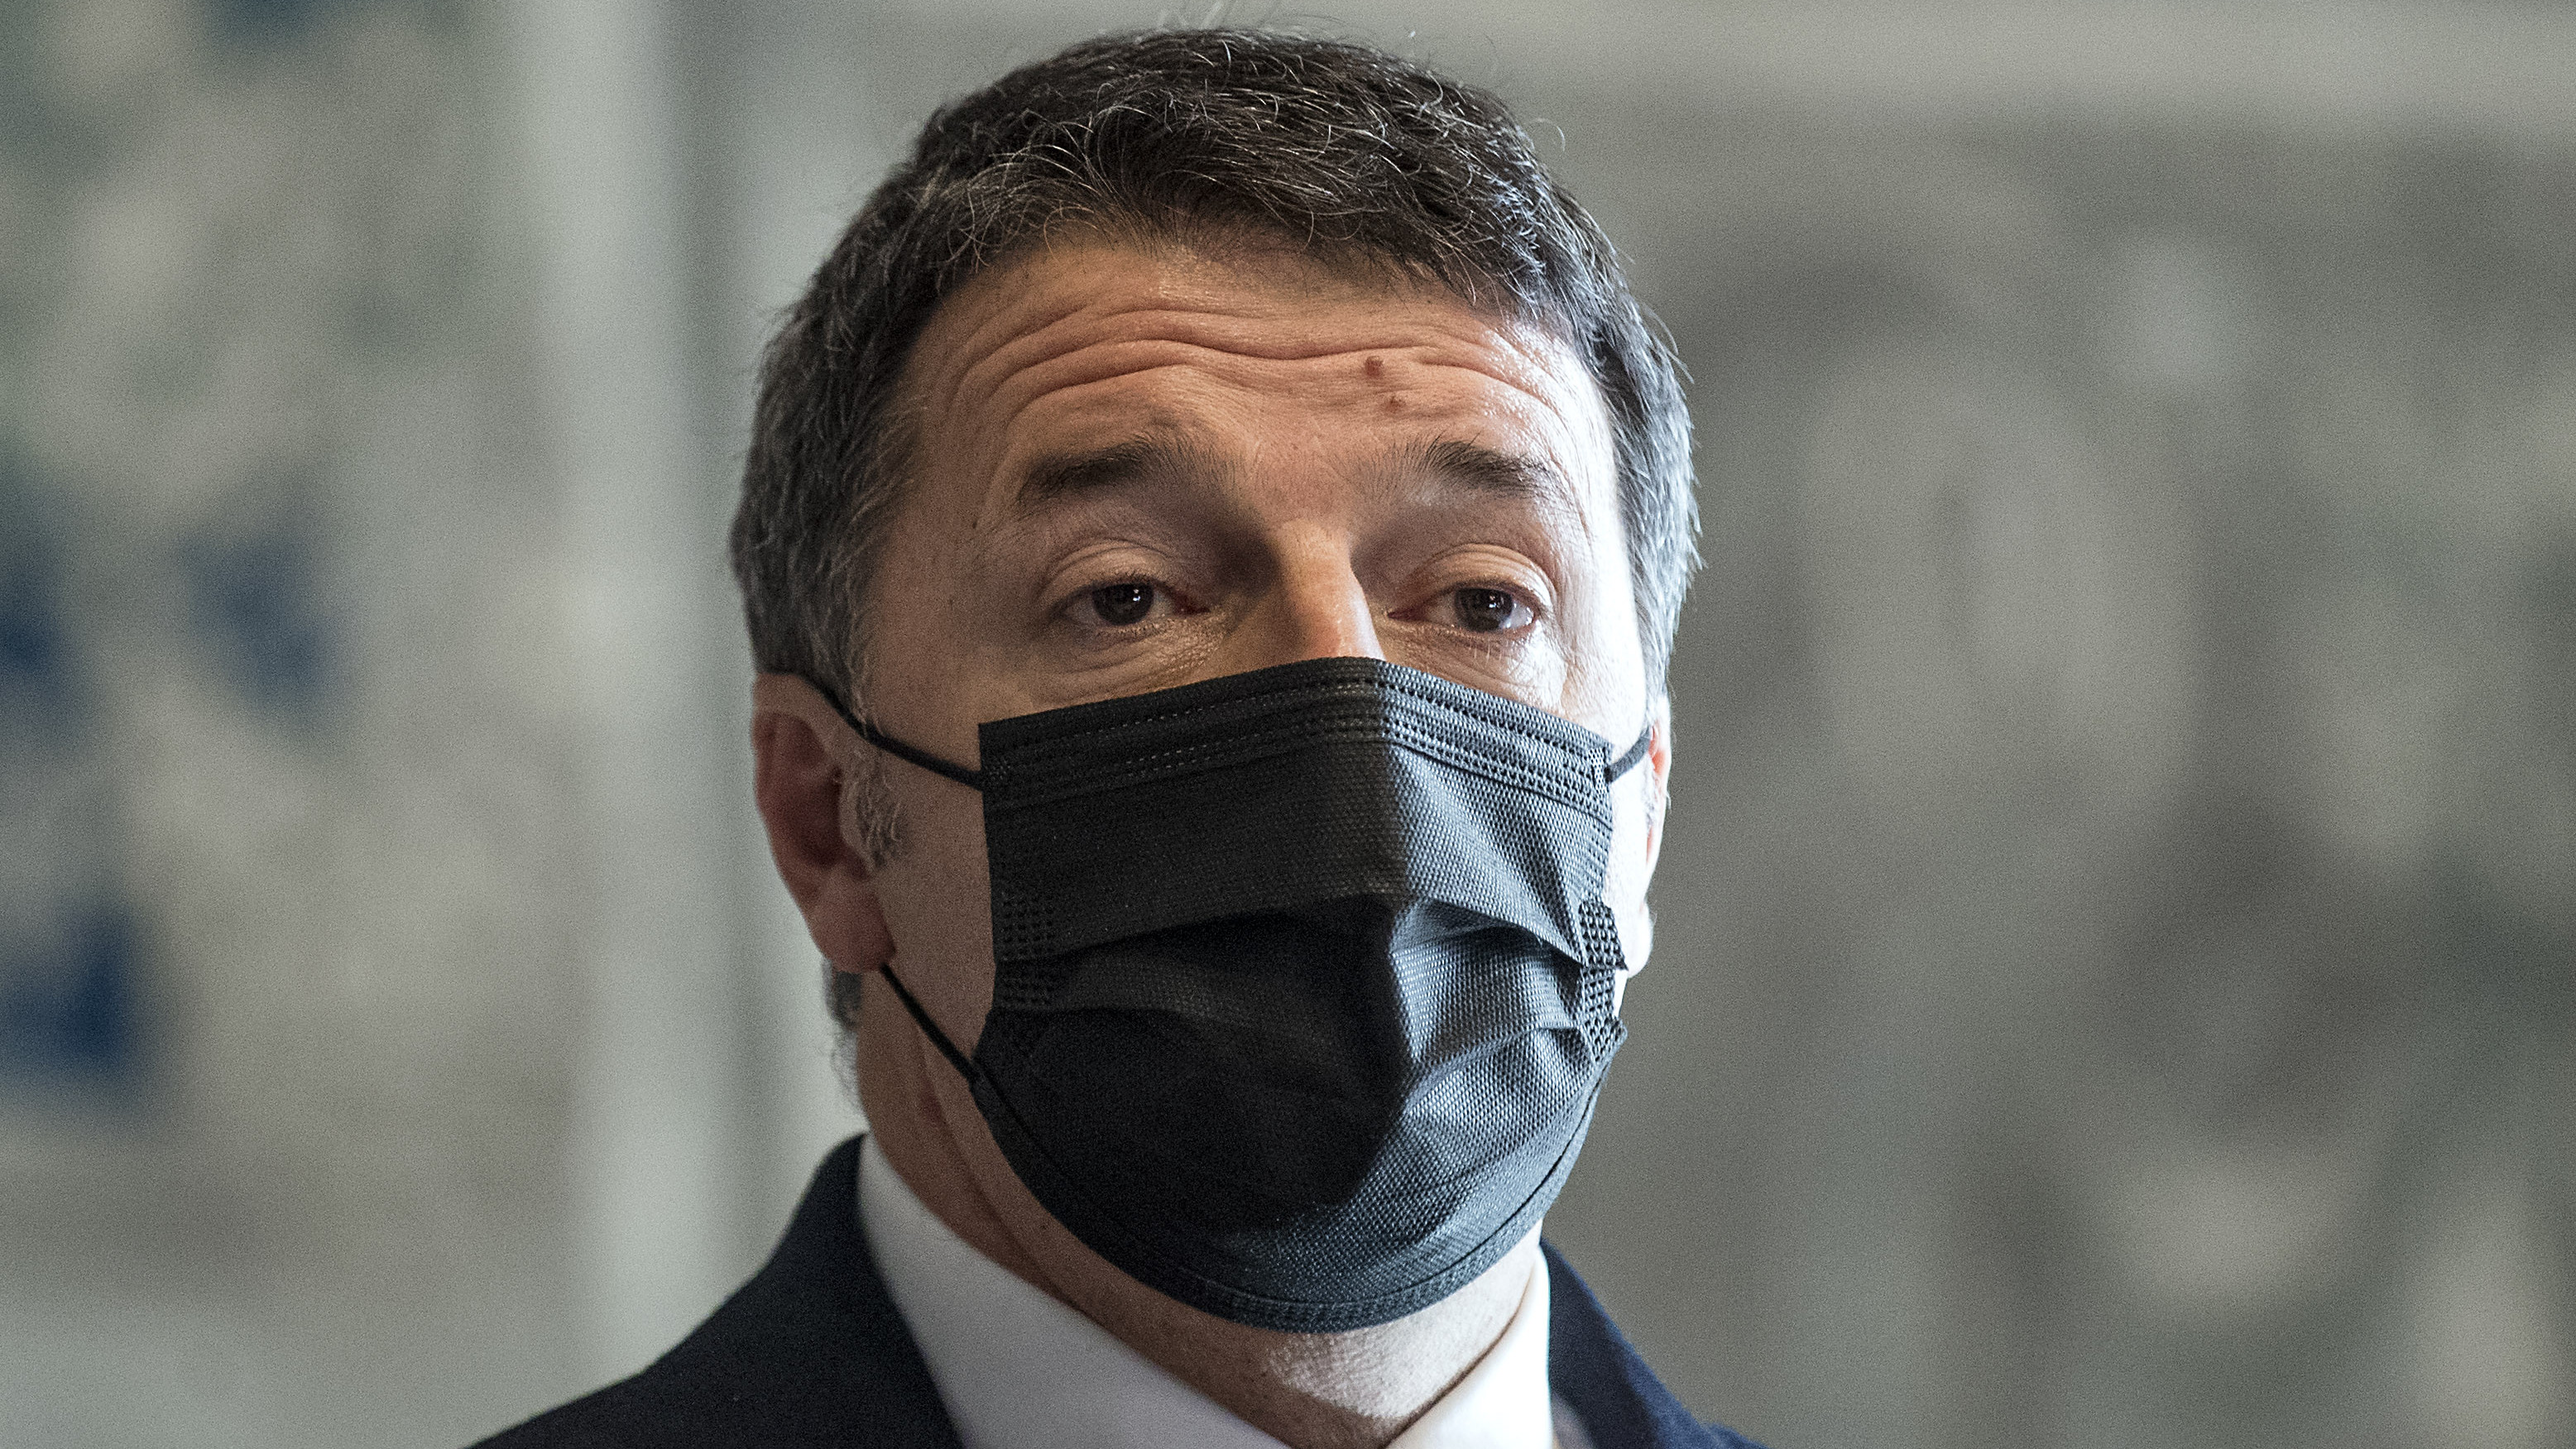 El ex primer ministro italiano Renzi, investigado por financiación irregular